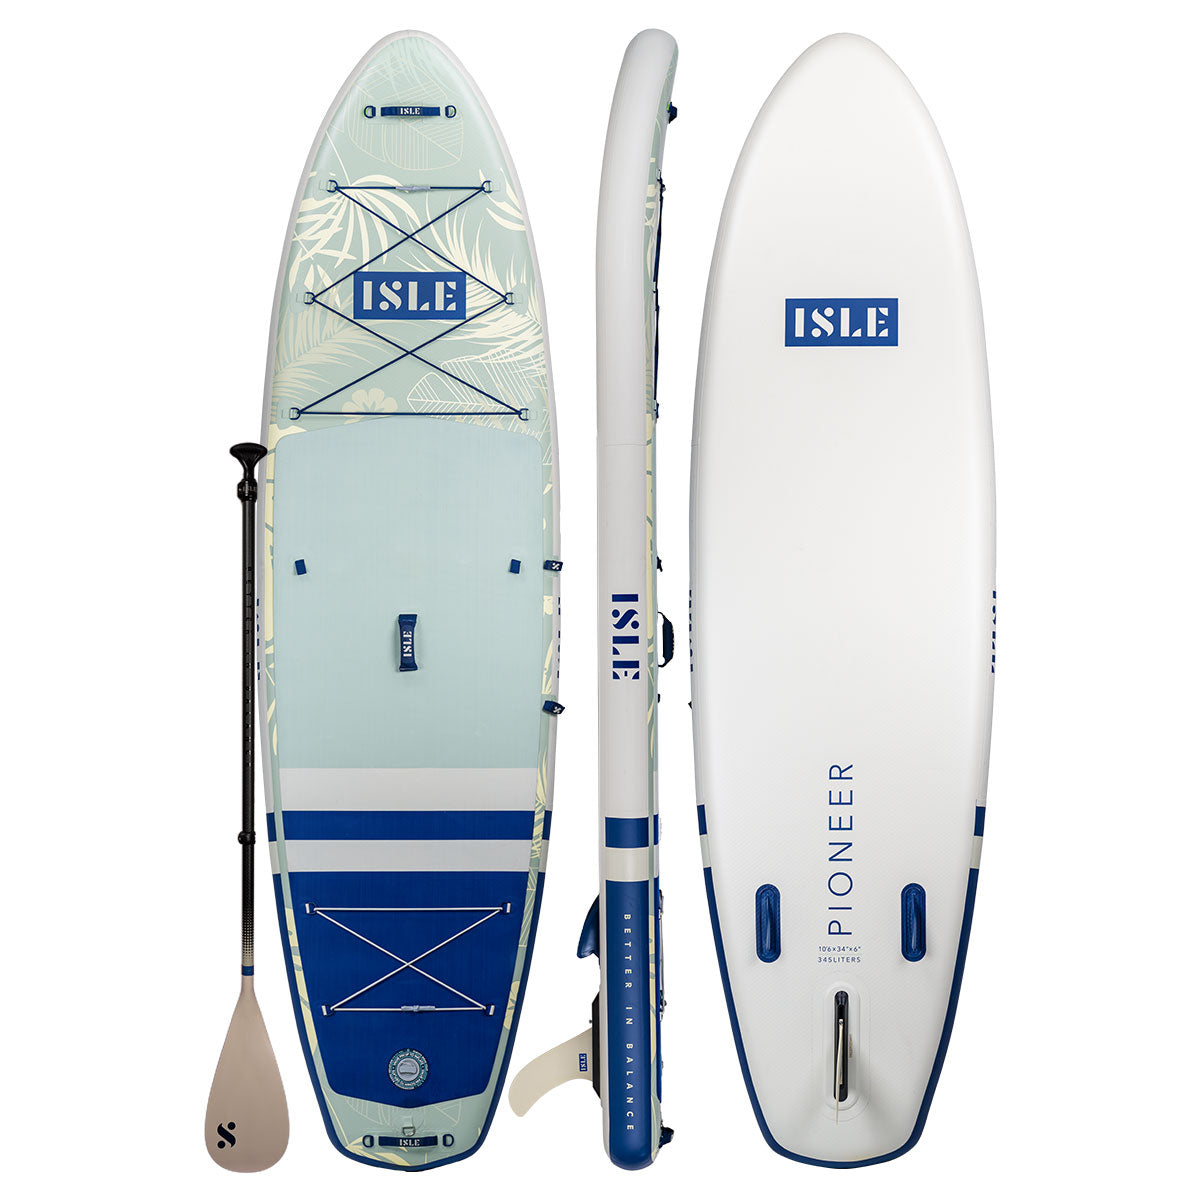 Explorer 2.0 | Inflatable | Boards ISLE ISLE Paddle Board Paddle 